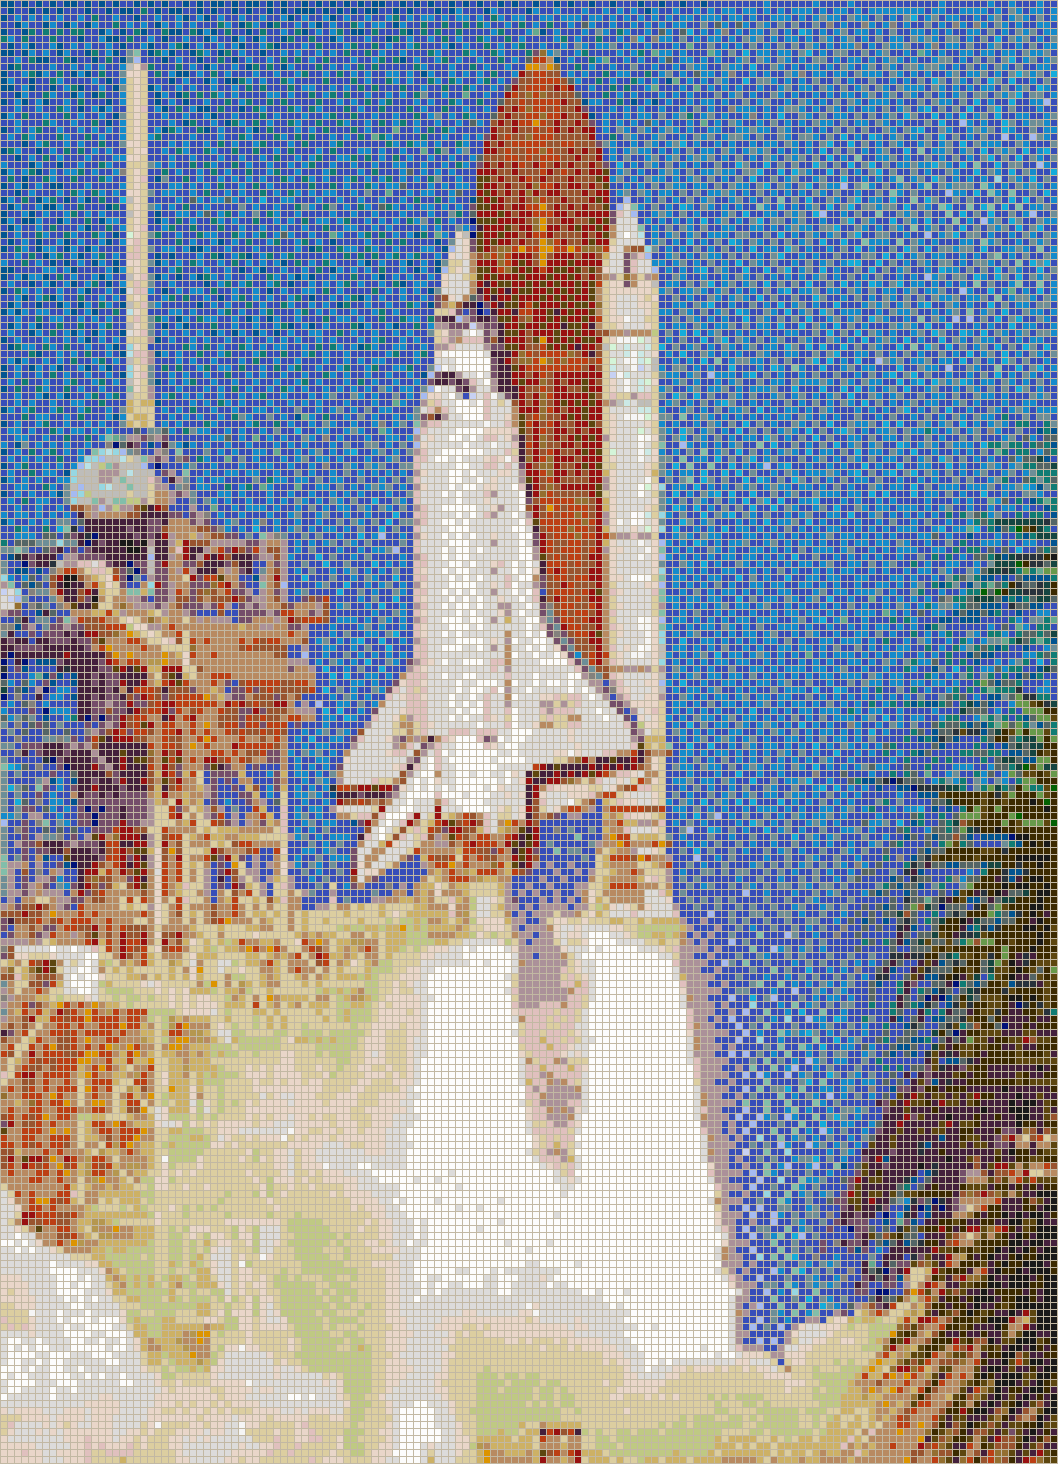 Launch of Atlantis Space Shuttle - Mosaic Tile Picture Art